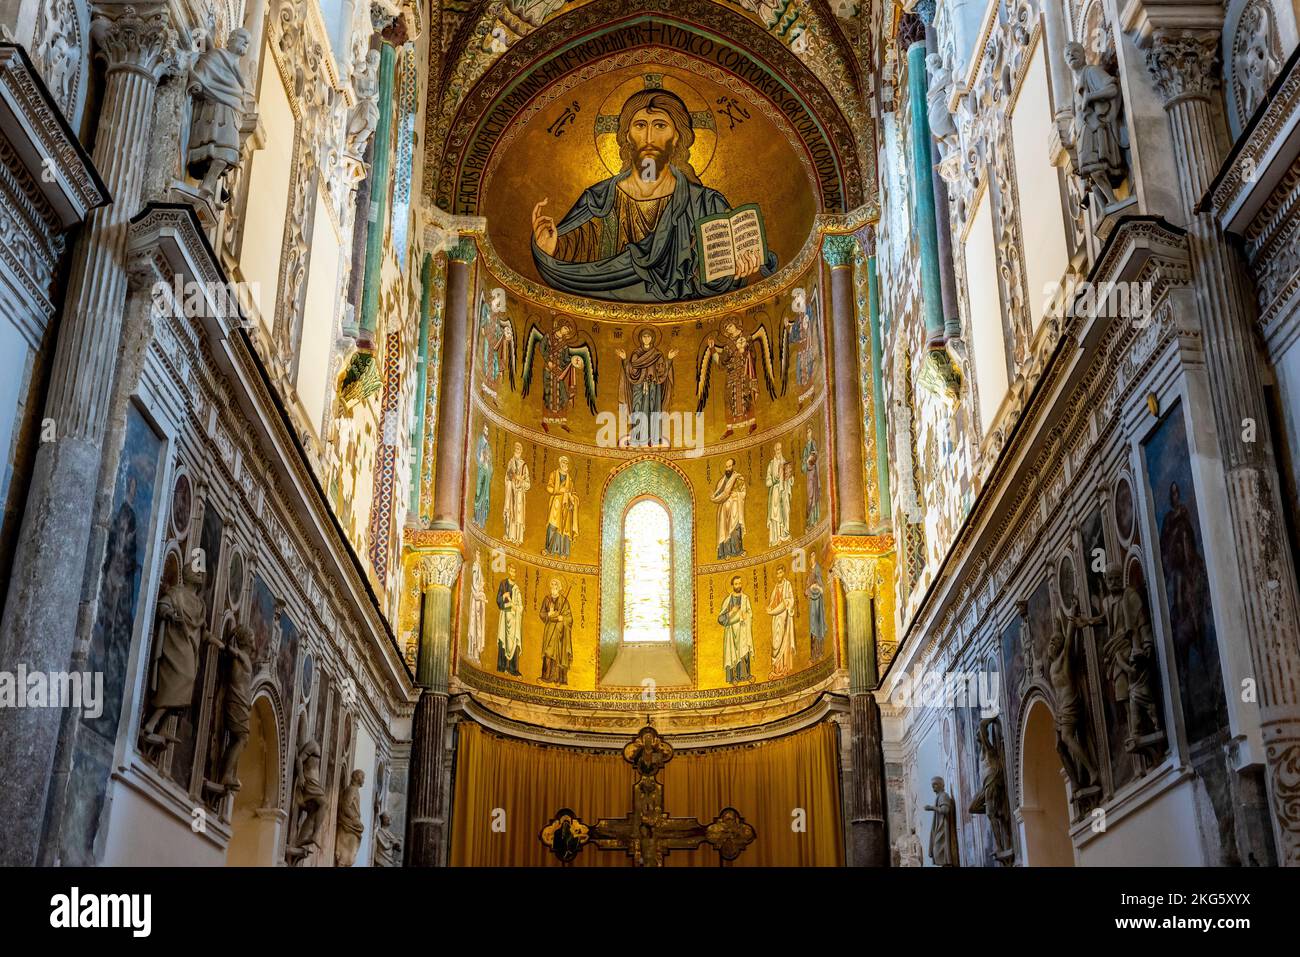 Das Innere der Kathedrale von Cefalu, Cefalu, Sizilien, Italien. Stockfoto